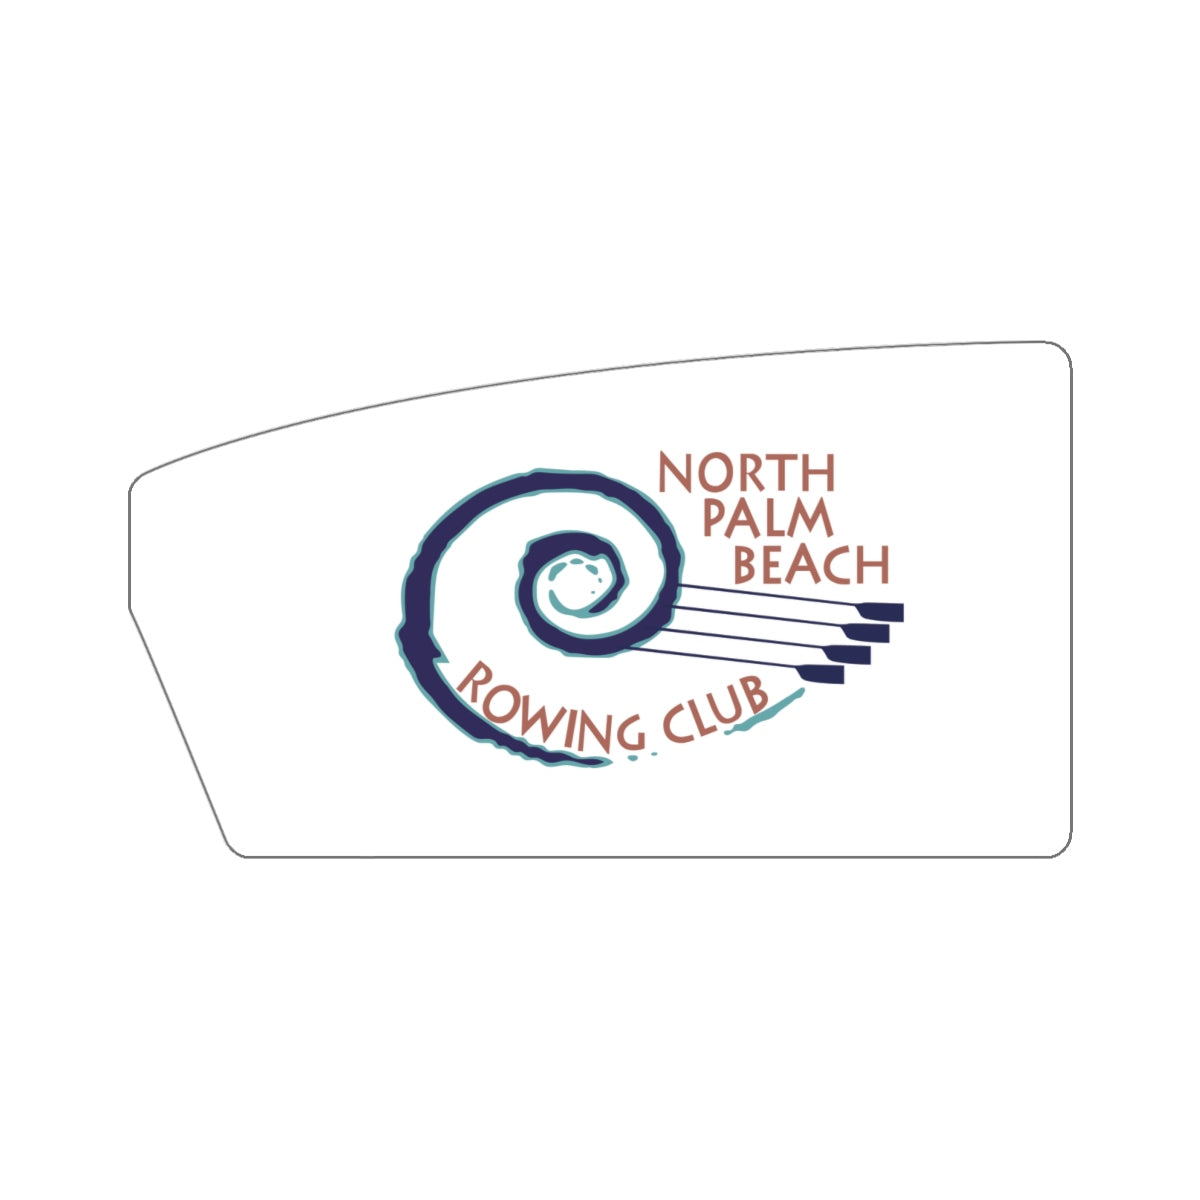 North Palm Beach Rowing Club Sticker